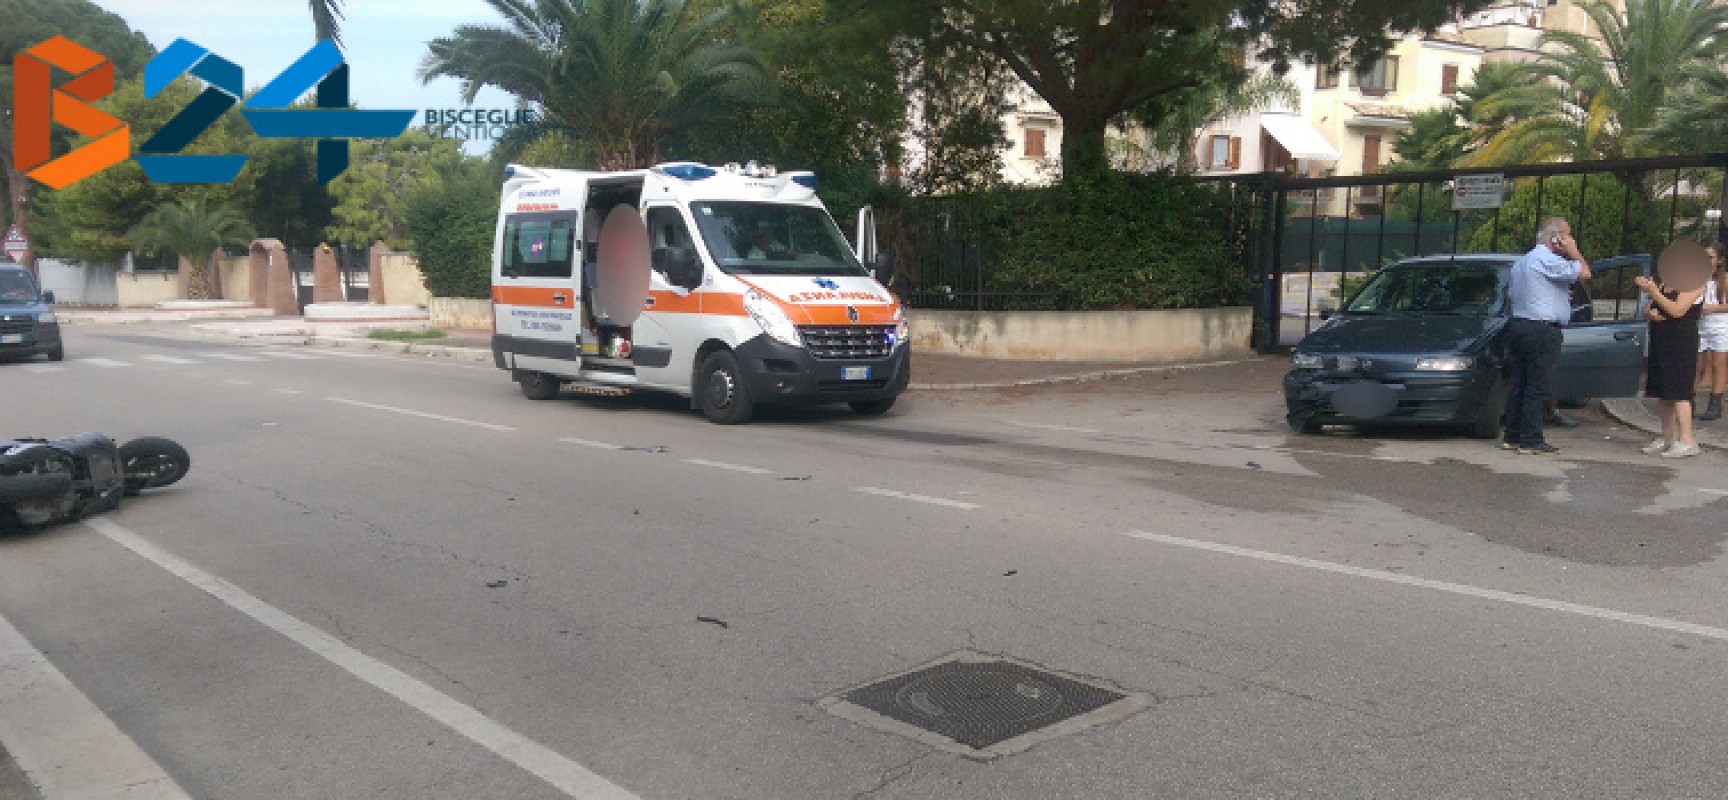 Incidente tra auto e scooter su via Sant’Andrea, trasportato al pronto soccorso il motociclista